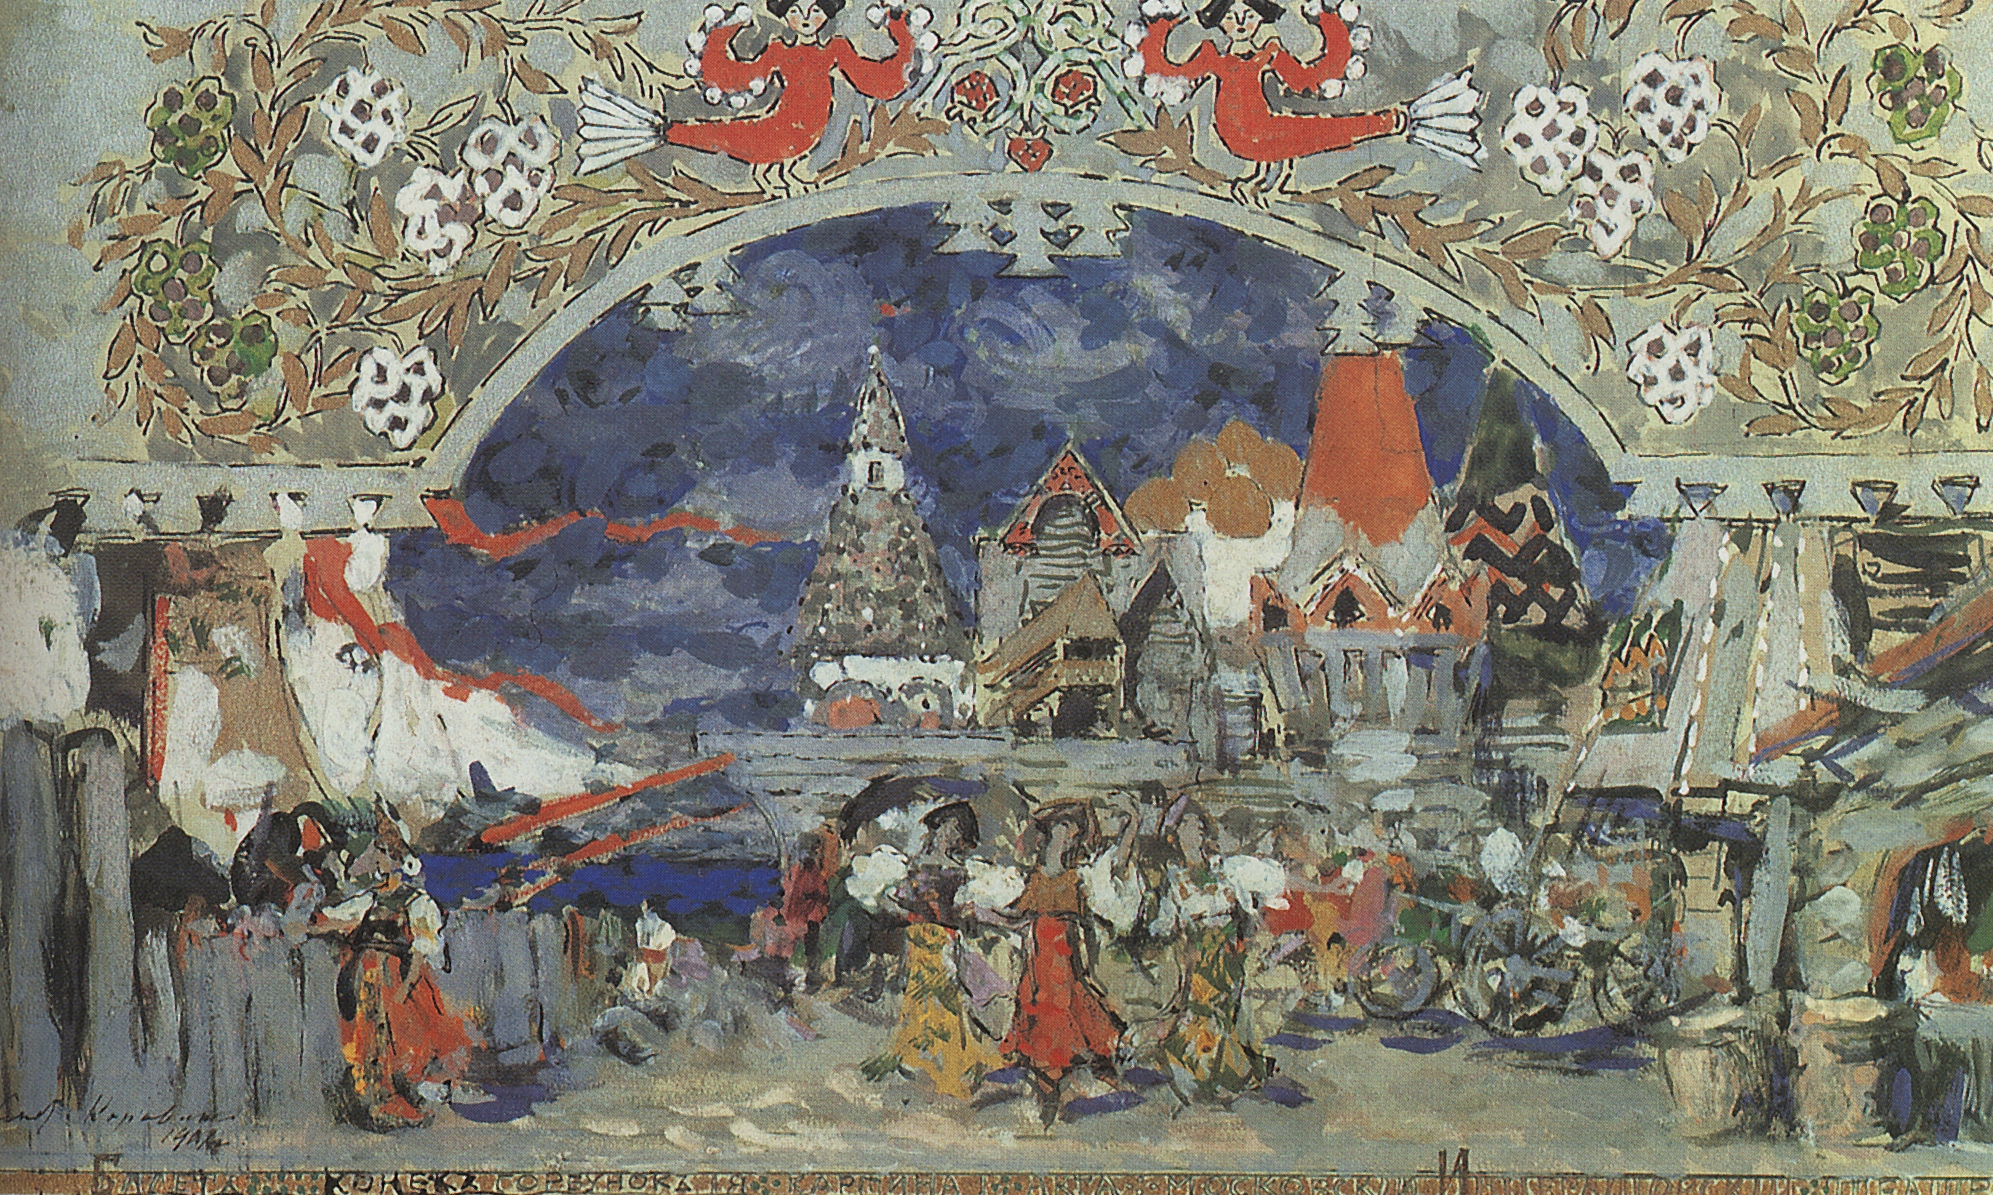 Коровин К.. Торговая пристань в Град-столице. 1912